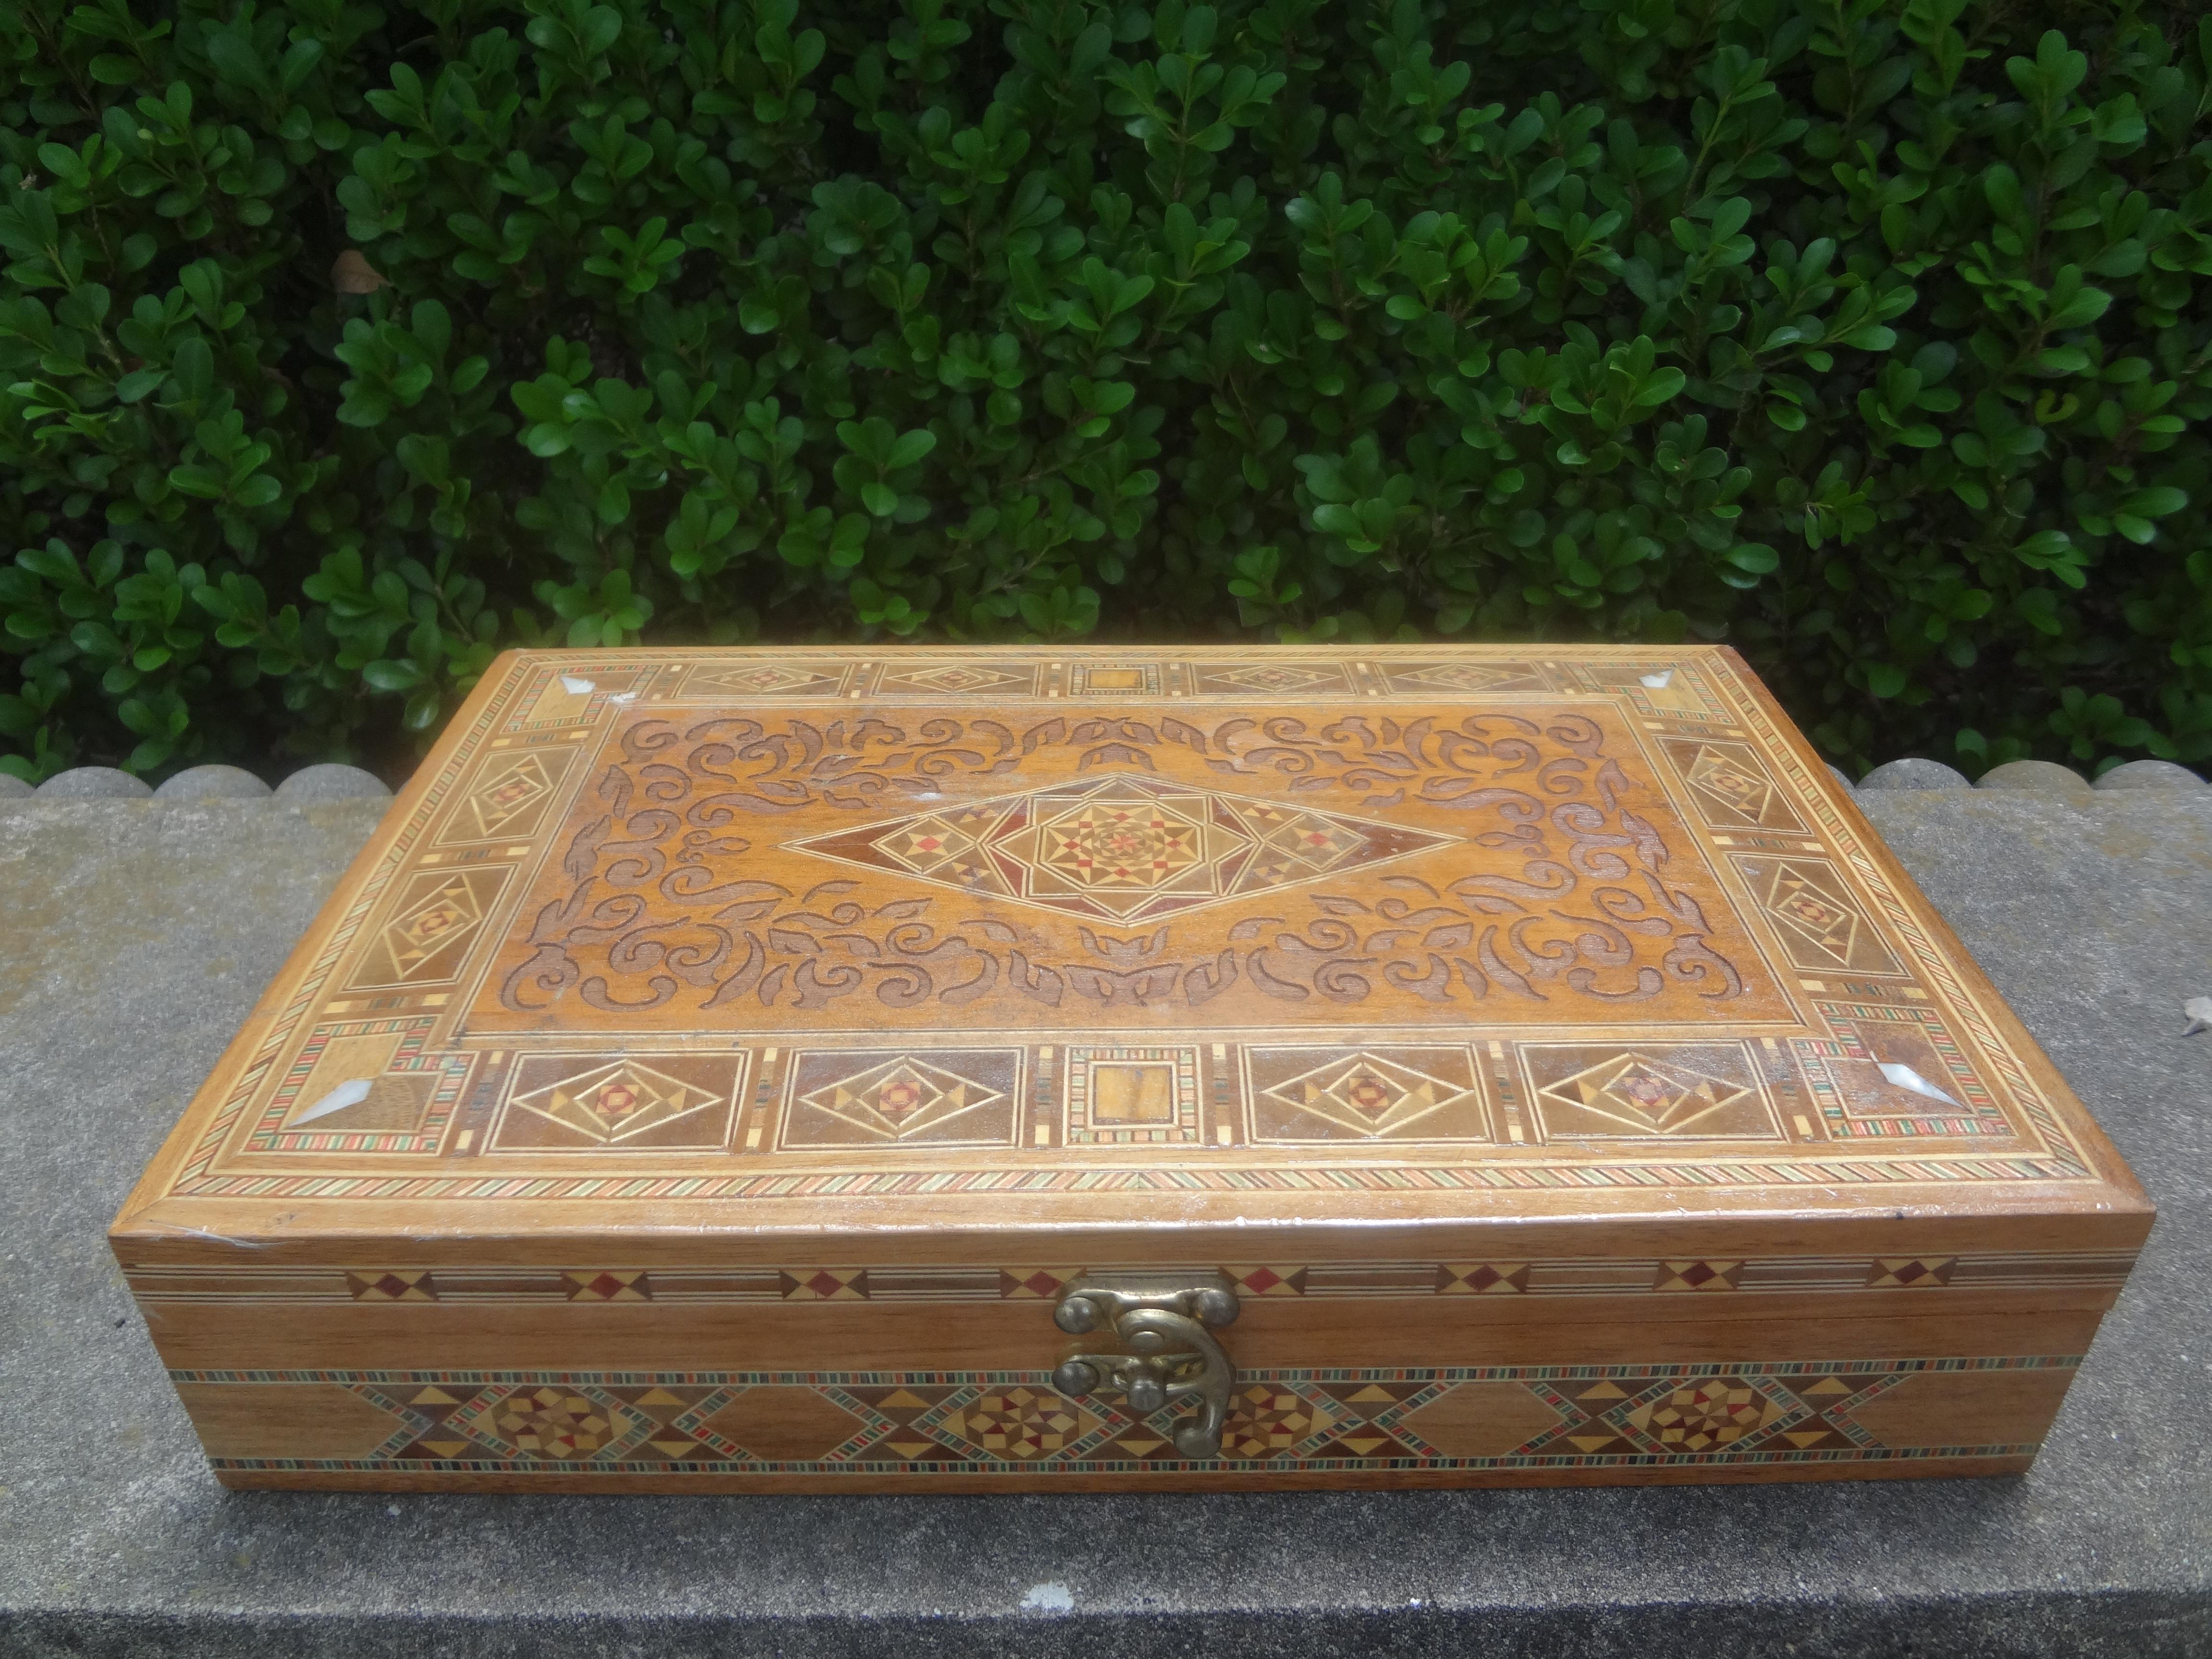 Boîte décorative marocaine rectangulaire vintage en marqueterie. Ce coffret marocain ou arabe du Moyen-Orient, composé de bois incrustés dans un motif de mosaïque, est l'accessoire idéal pour une table basse.